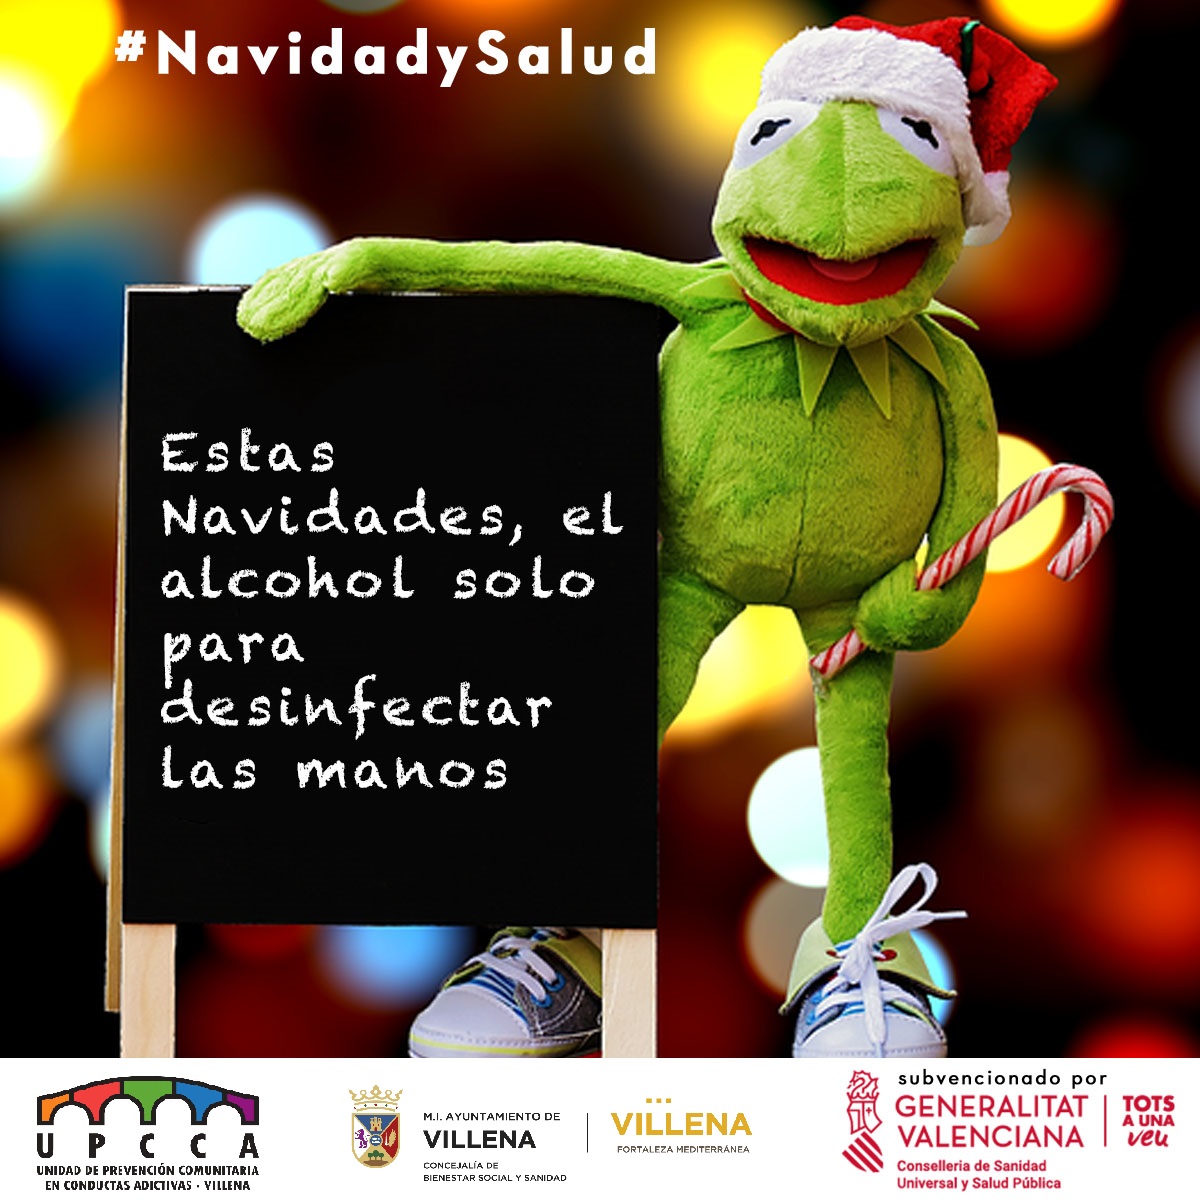 La campaña ‘Navidad y Salud’ de la UPCCA alerta del consumo masivo de alcohol durante las fiestas